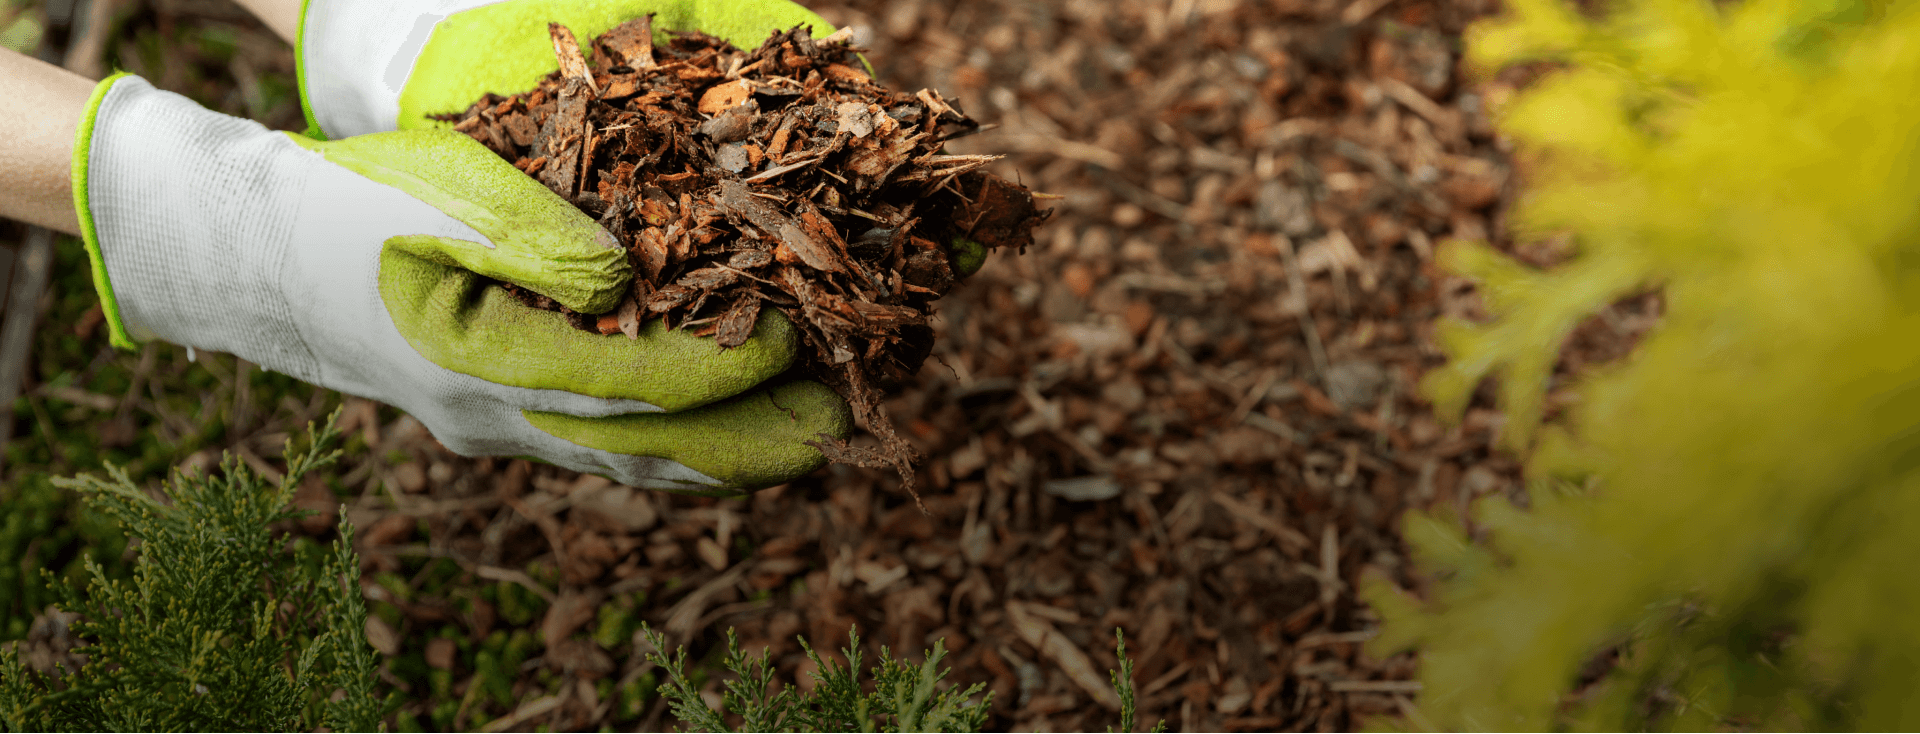 Garden Mulch – High quality recycled shredded wood mulch